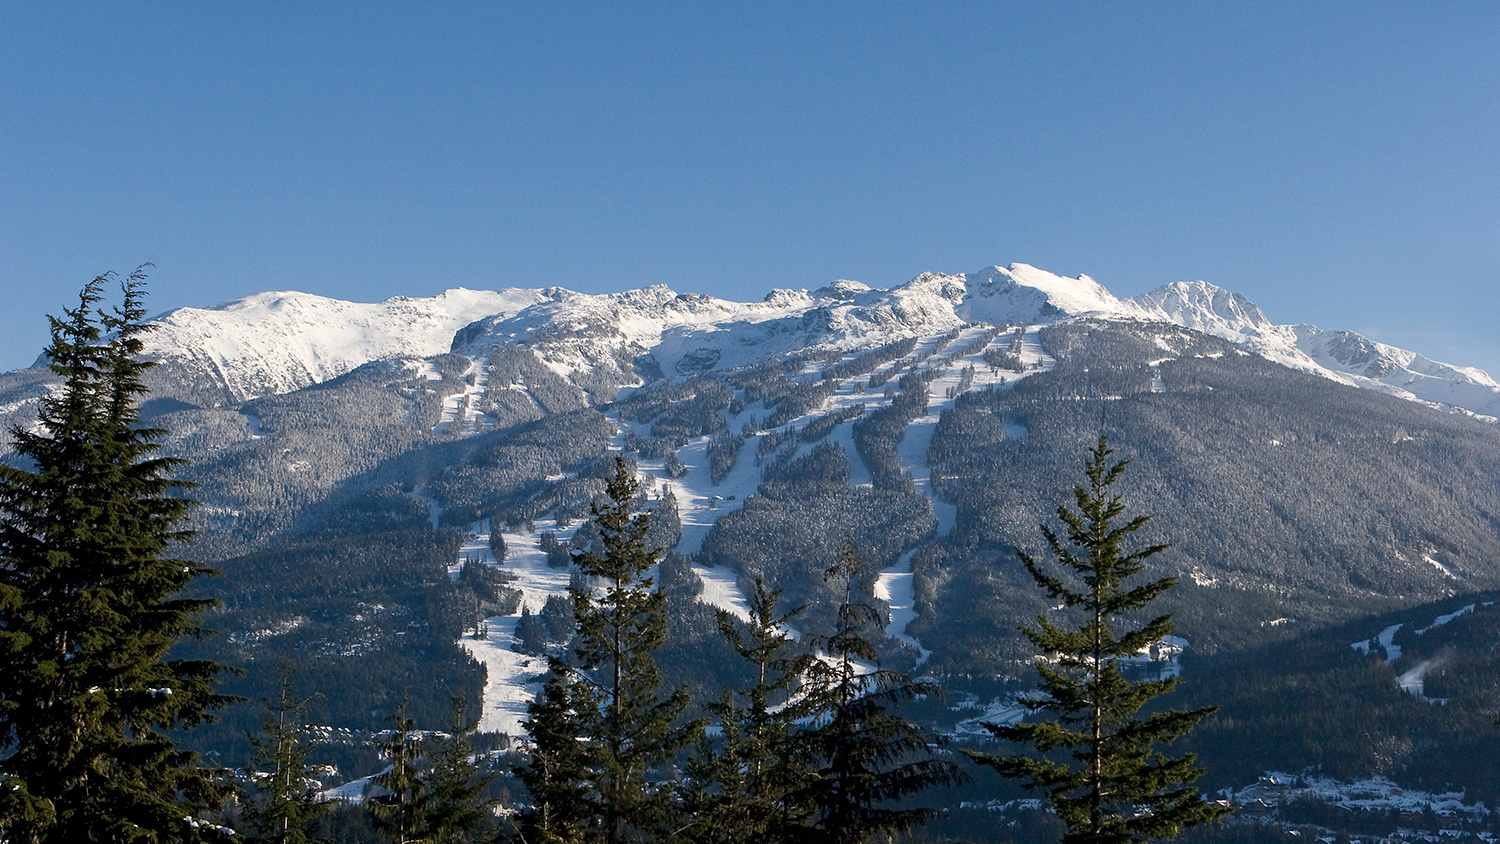 Mountain view of Whistler